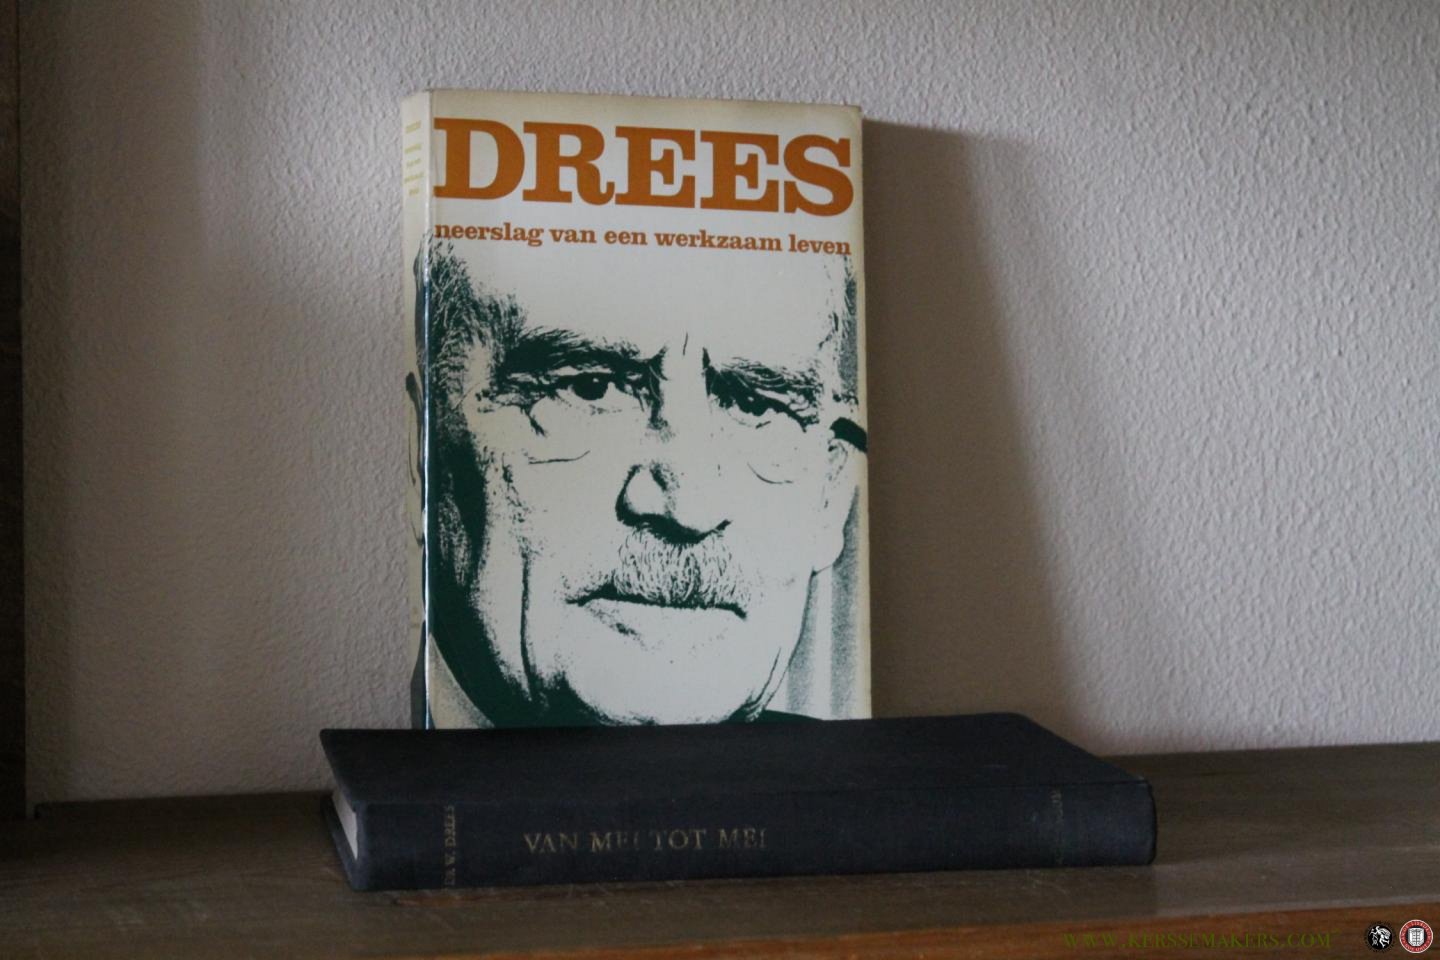 DREES, Willem / VEER, Paul van 't - 2 boeken gesigneerd door (voormalig) minister-president Willem Drees: Van Mei tot Mei + Drees. Neerslag van een werkzaam leven